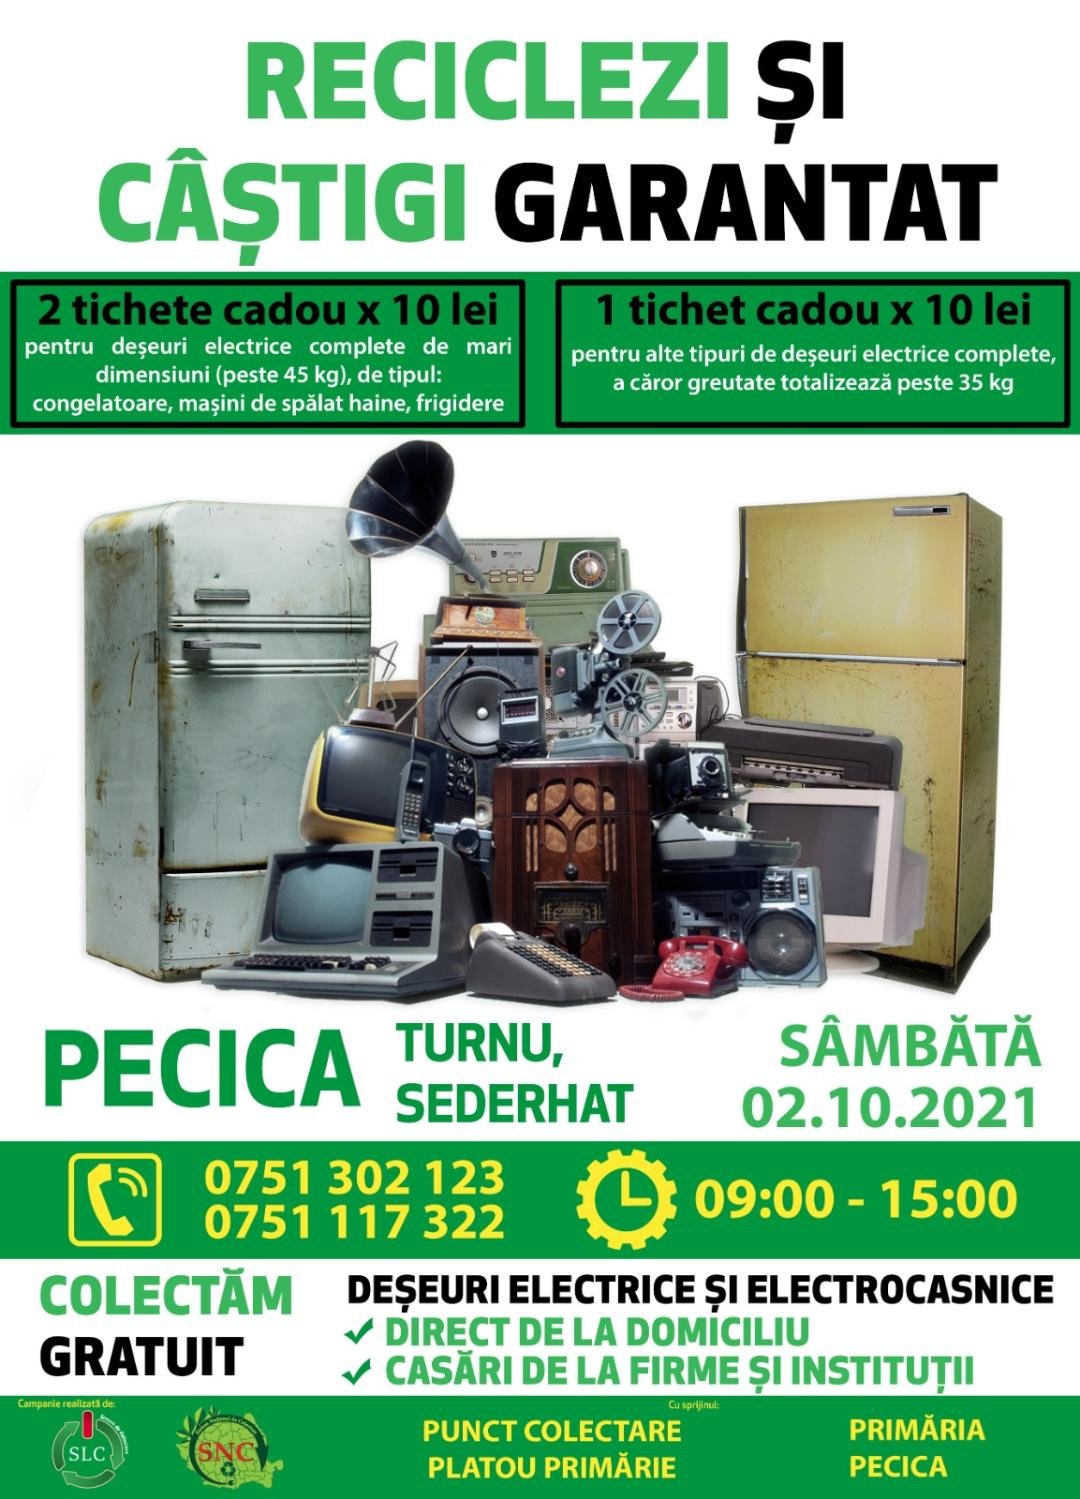 Sâmbătă, la Pecica se colectează deșeurile electrice și electronice